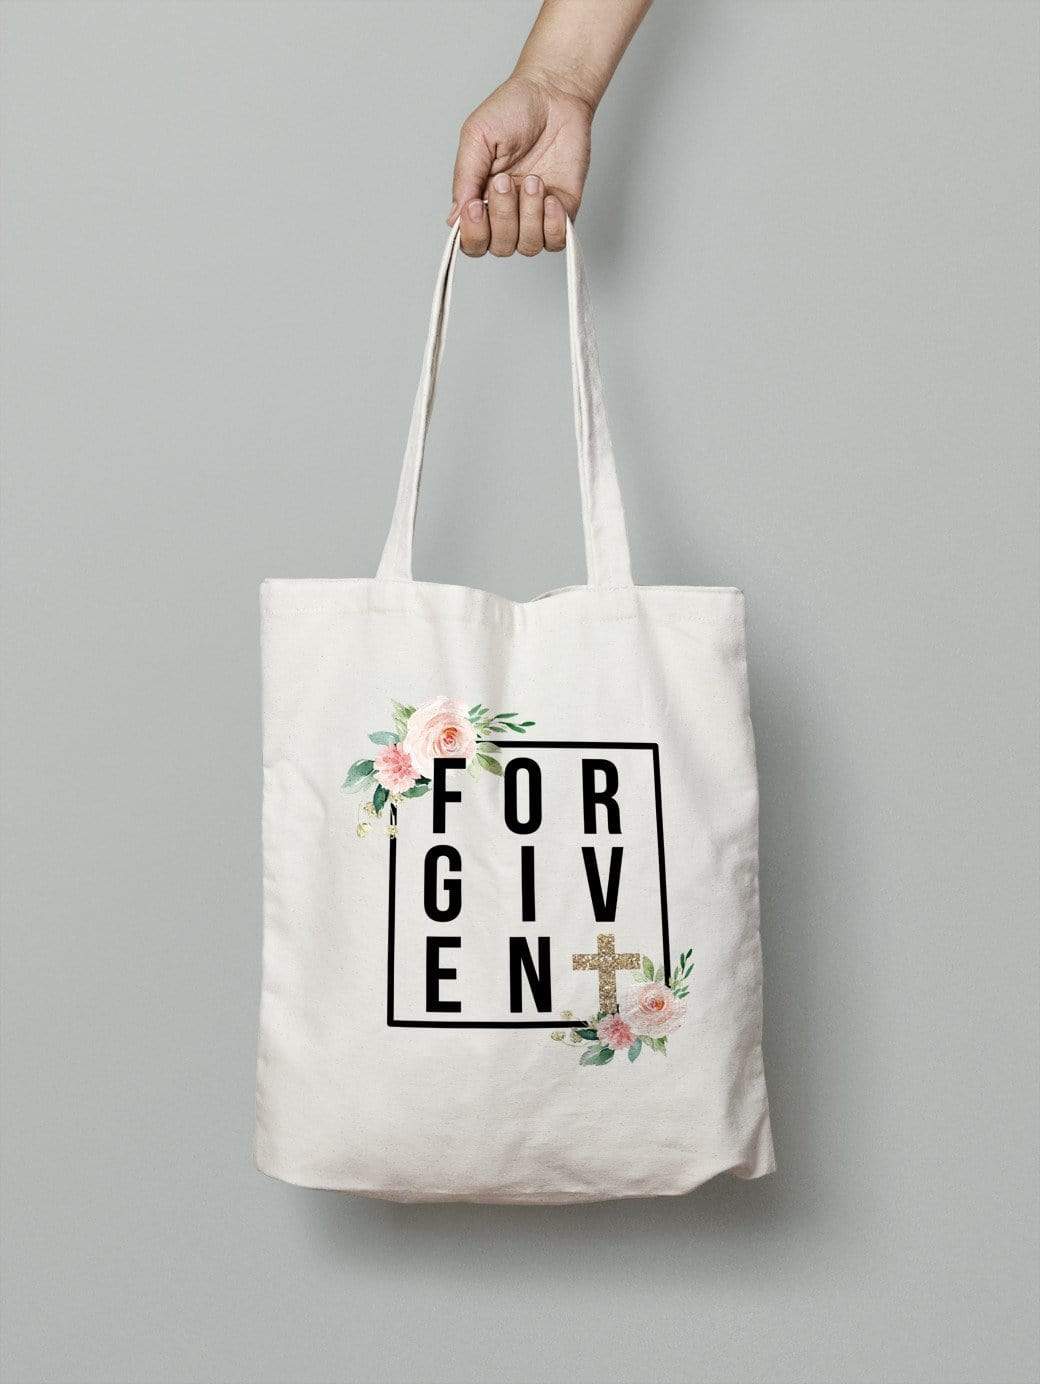 Forgiven - Tote Bag, 100% Cotton, Zipper Handle